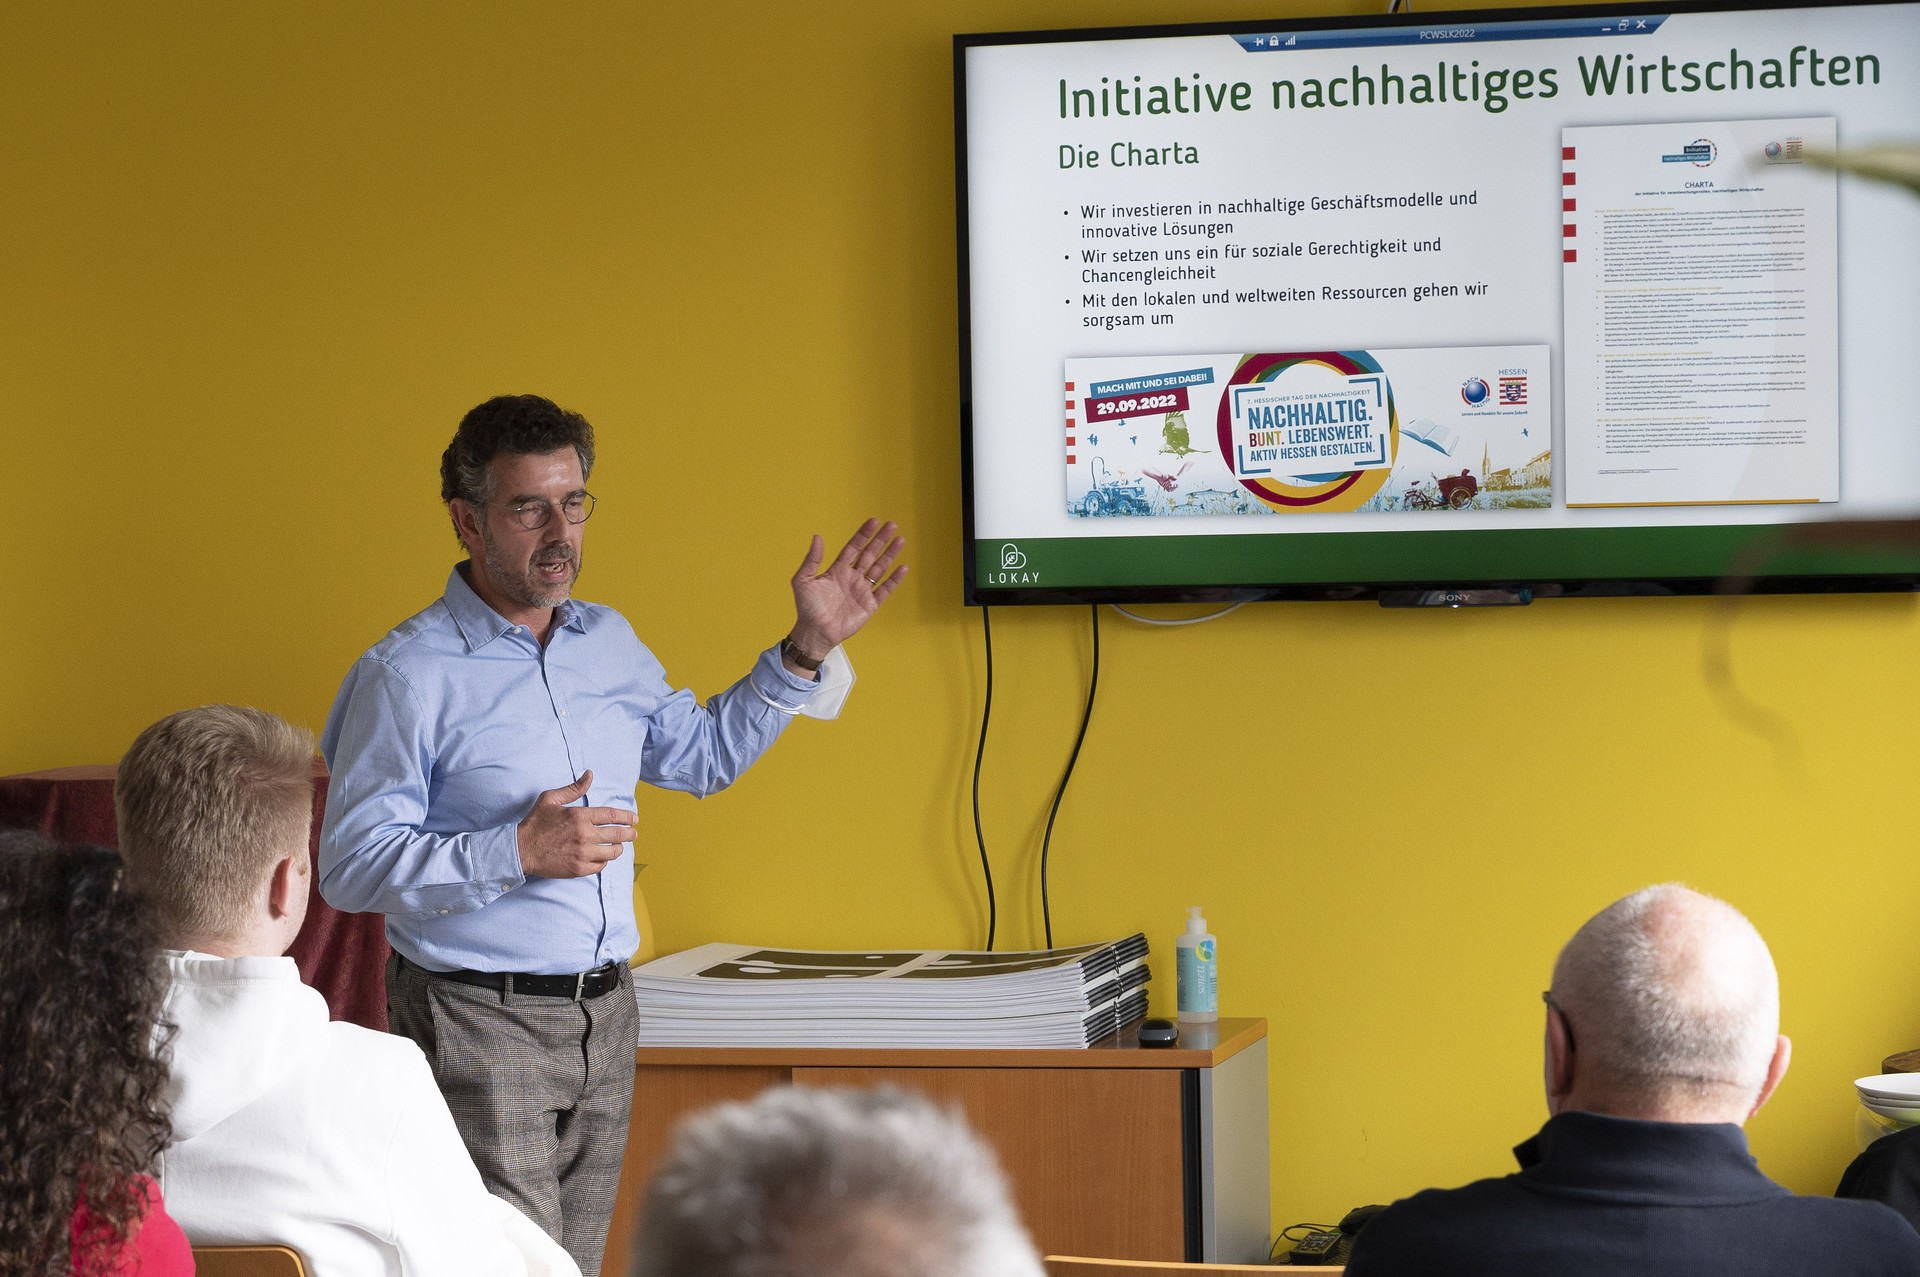 Ralf Lokay steht vor einer Gruppe von Menschen und spricht. Mit einer Hand deutet er auf einen Bildschirm, auf dem ein Slide mit der Überschrift "Initiative nachhaltiges Wirtschaften" zu sehen ist. 